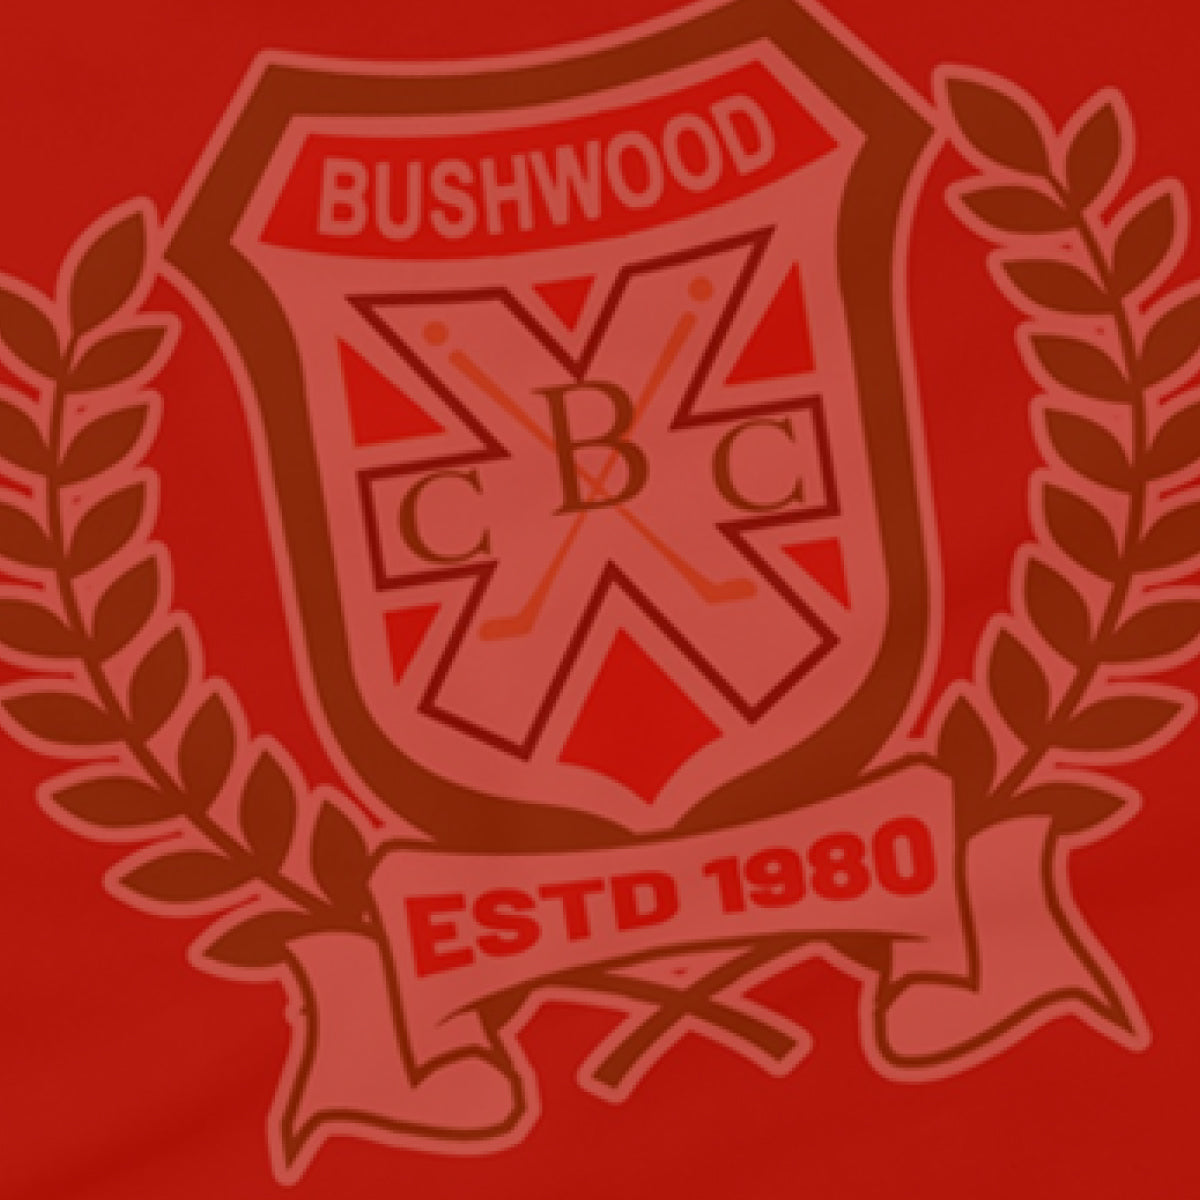 Bushwood Bundle